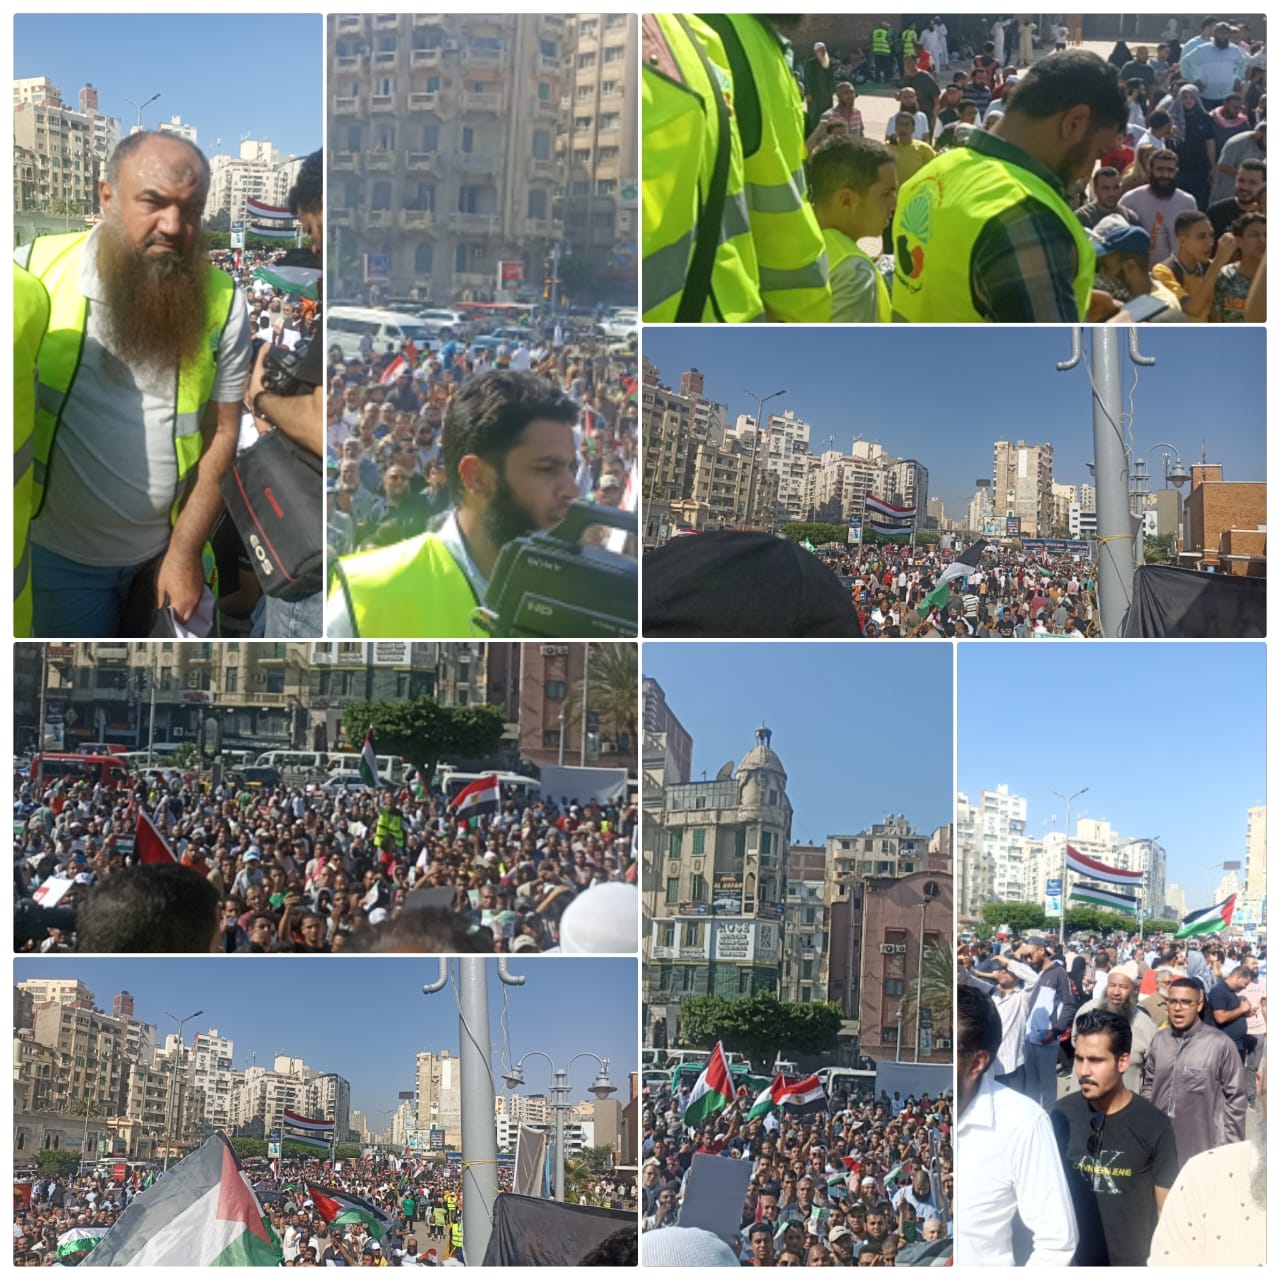 حزب النور السلفي يقود مسيرة حاشدة في الإسكندرية